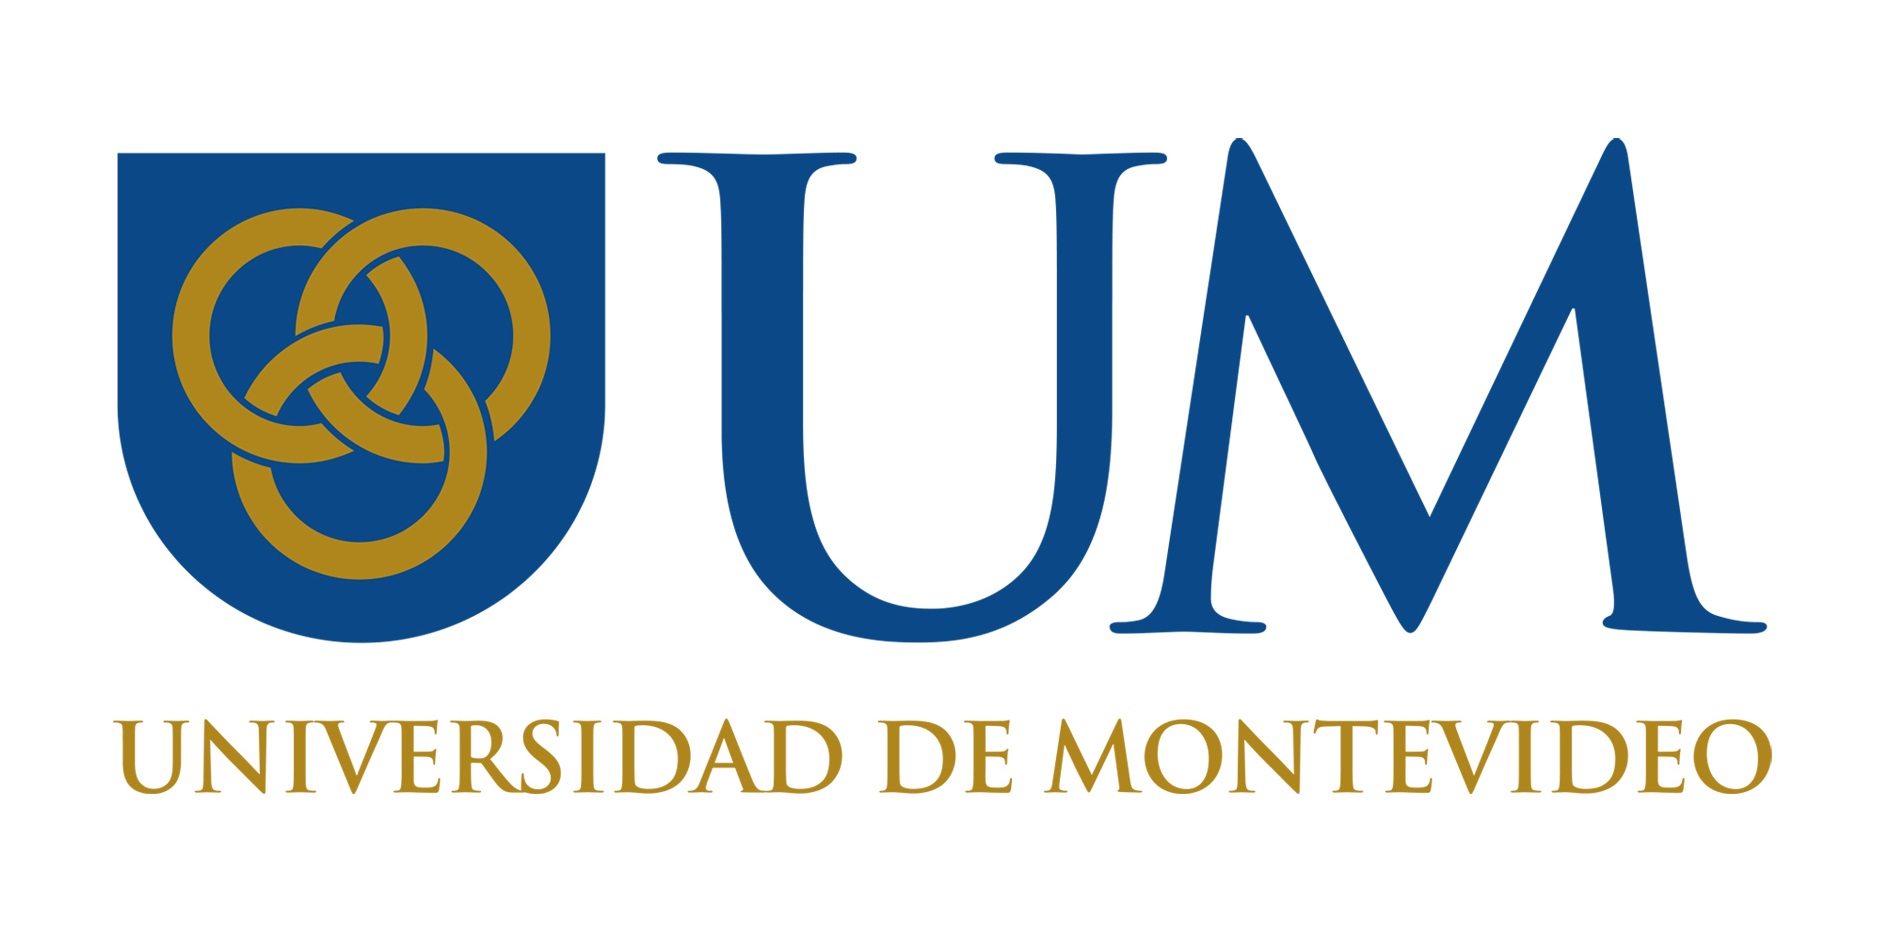 Universidad de Montevideo Logo